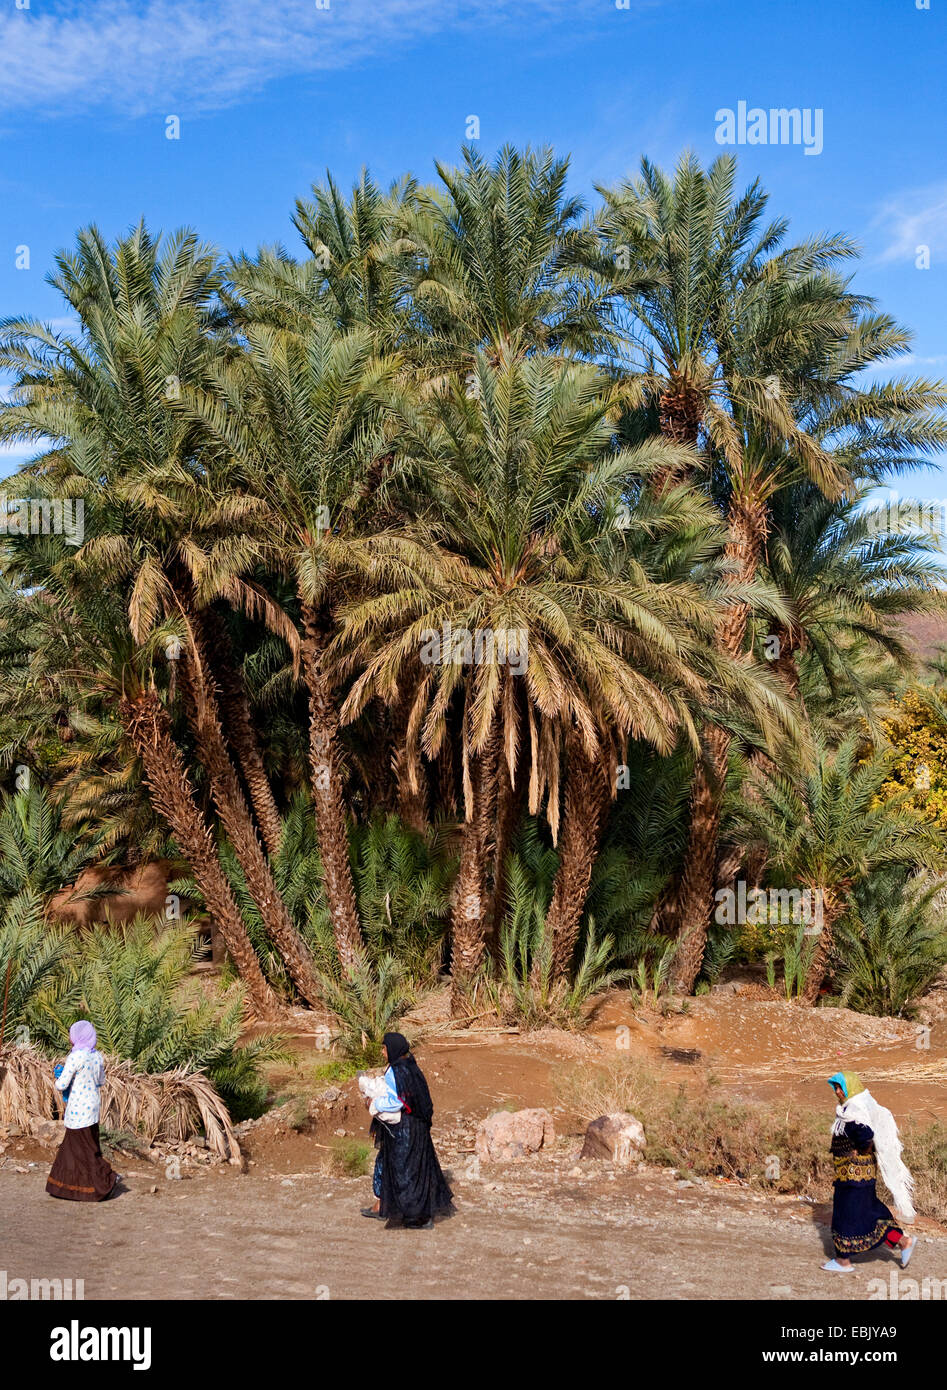 Palmier dattier (Phoenix dactylifera), les autochtones dans une oasis de palmiers, Maroc, Marrakech-tensift-DaraÔ Banque D'Images